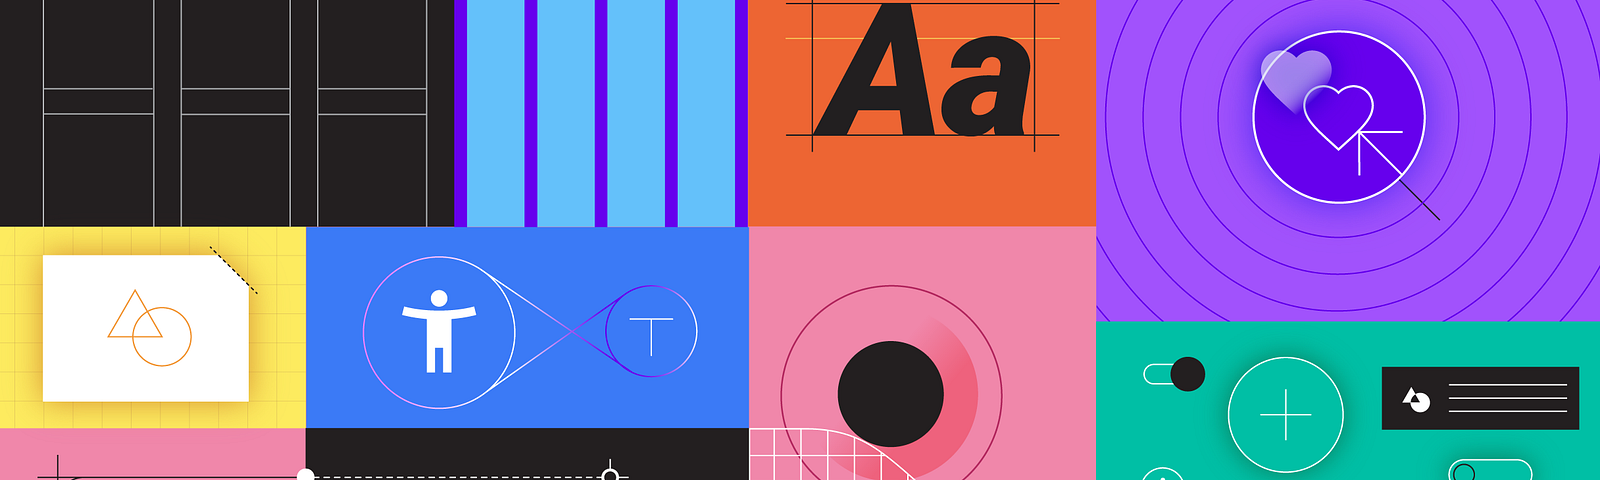 Imagem apresenta diferentes formas conectando icones e letras